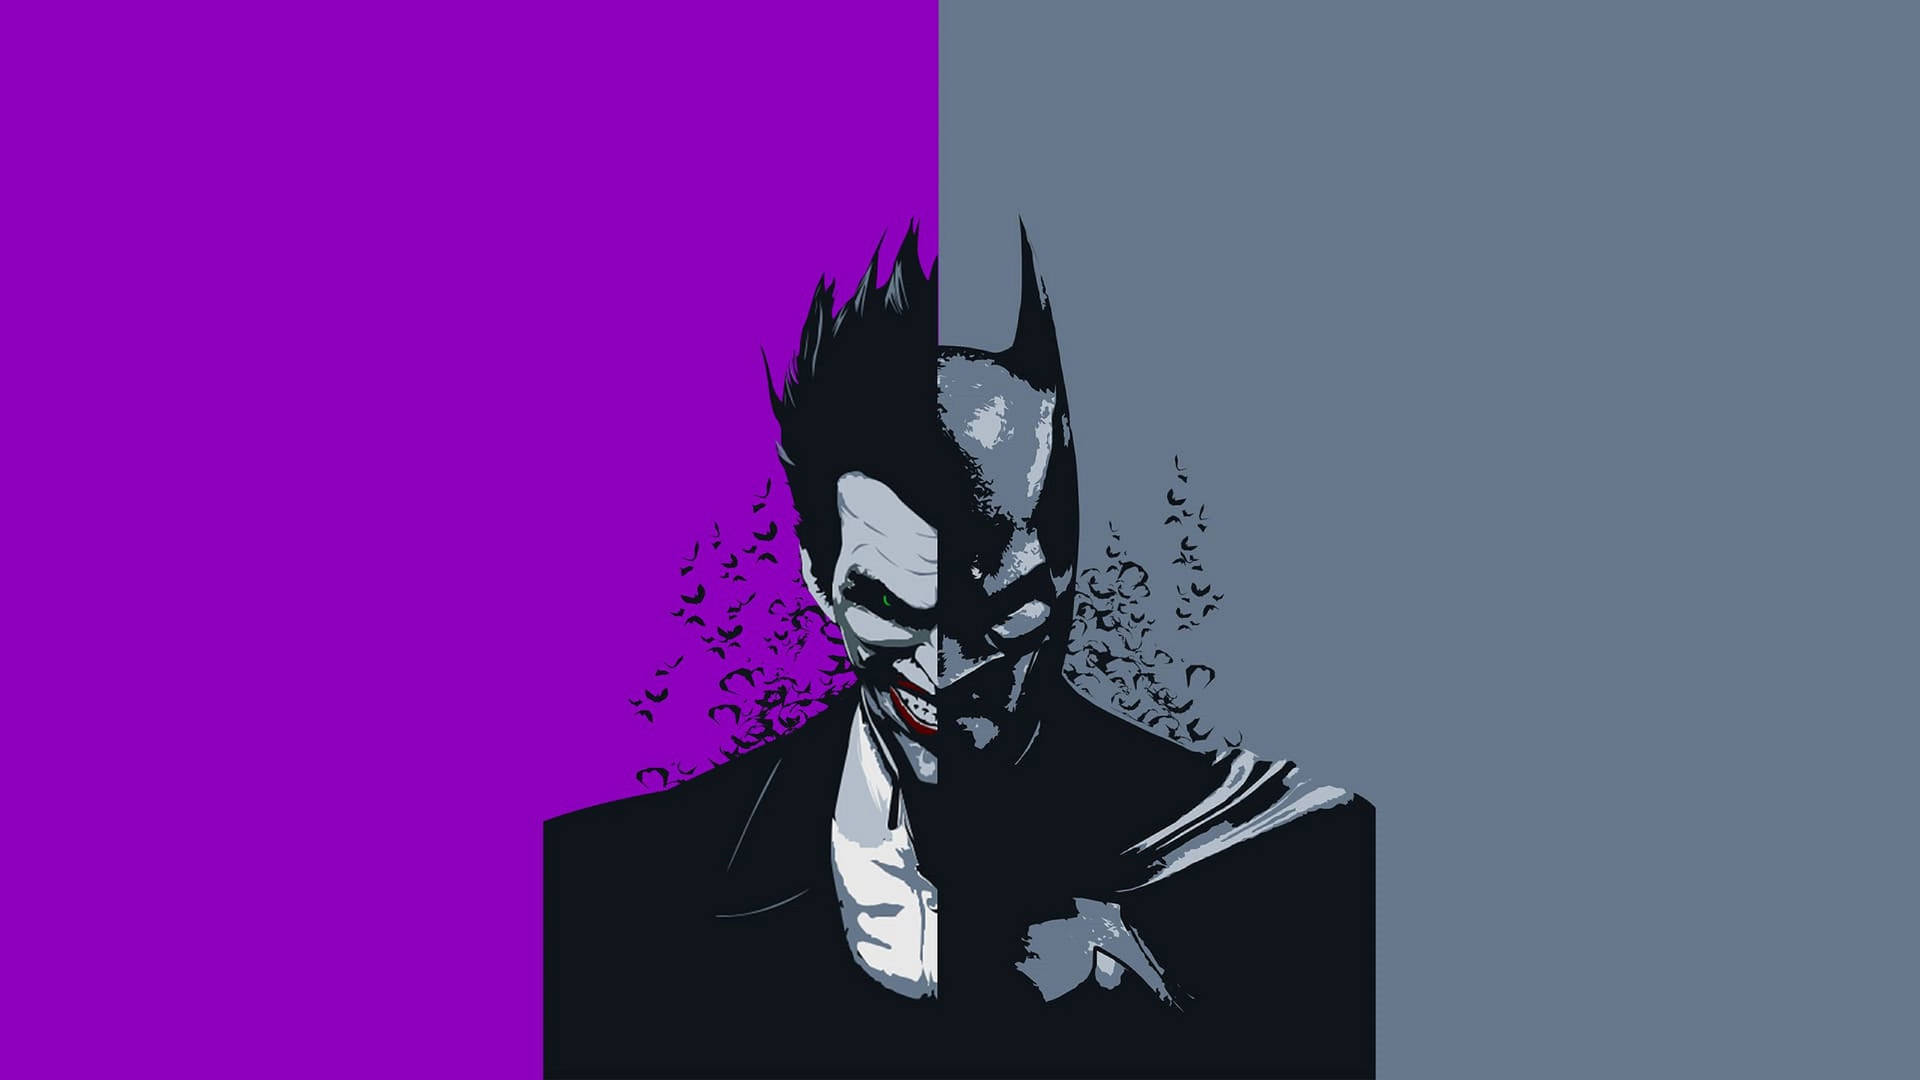 Joker Batman Face-off Art